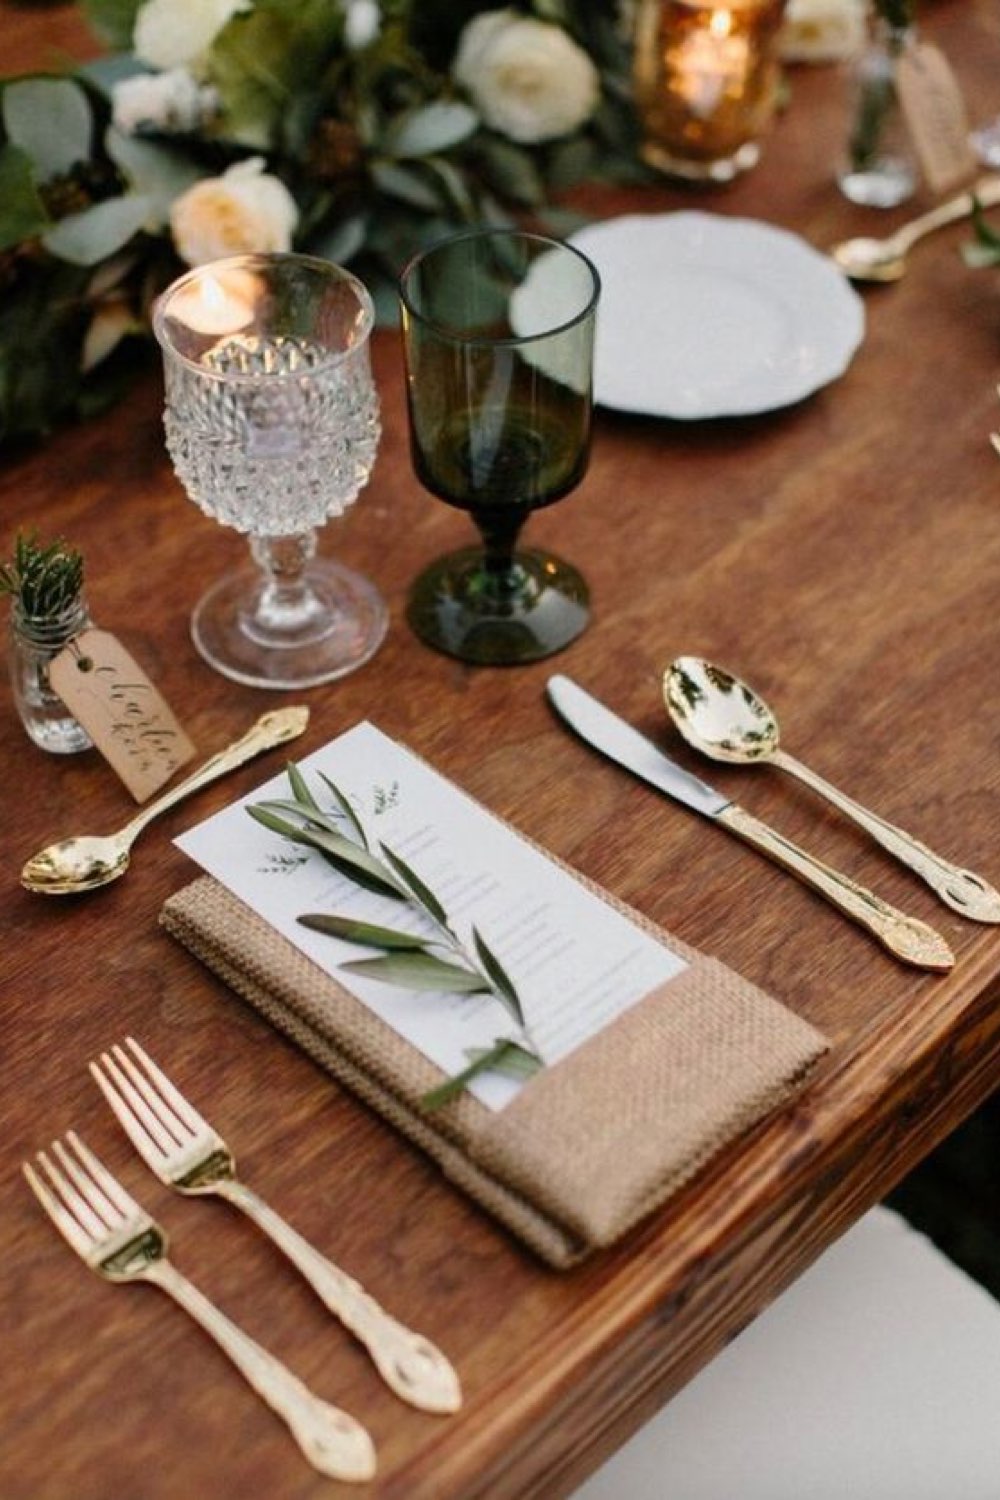 decoration mariage champetre romantique décor de table simple et chic pochette serviette et menu couverts dorés jolis verres à pieds